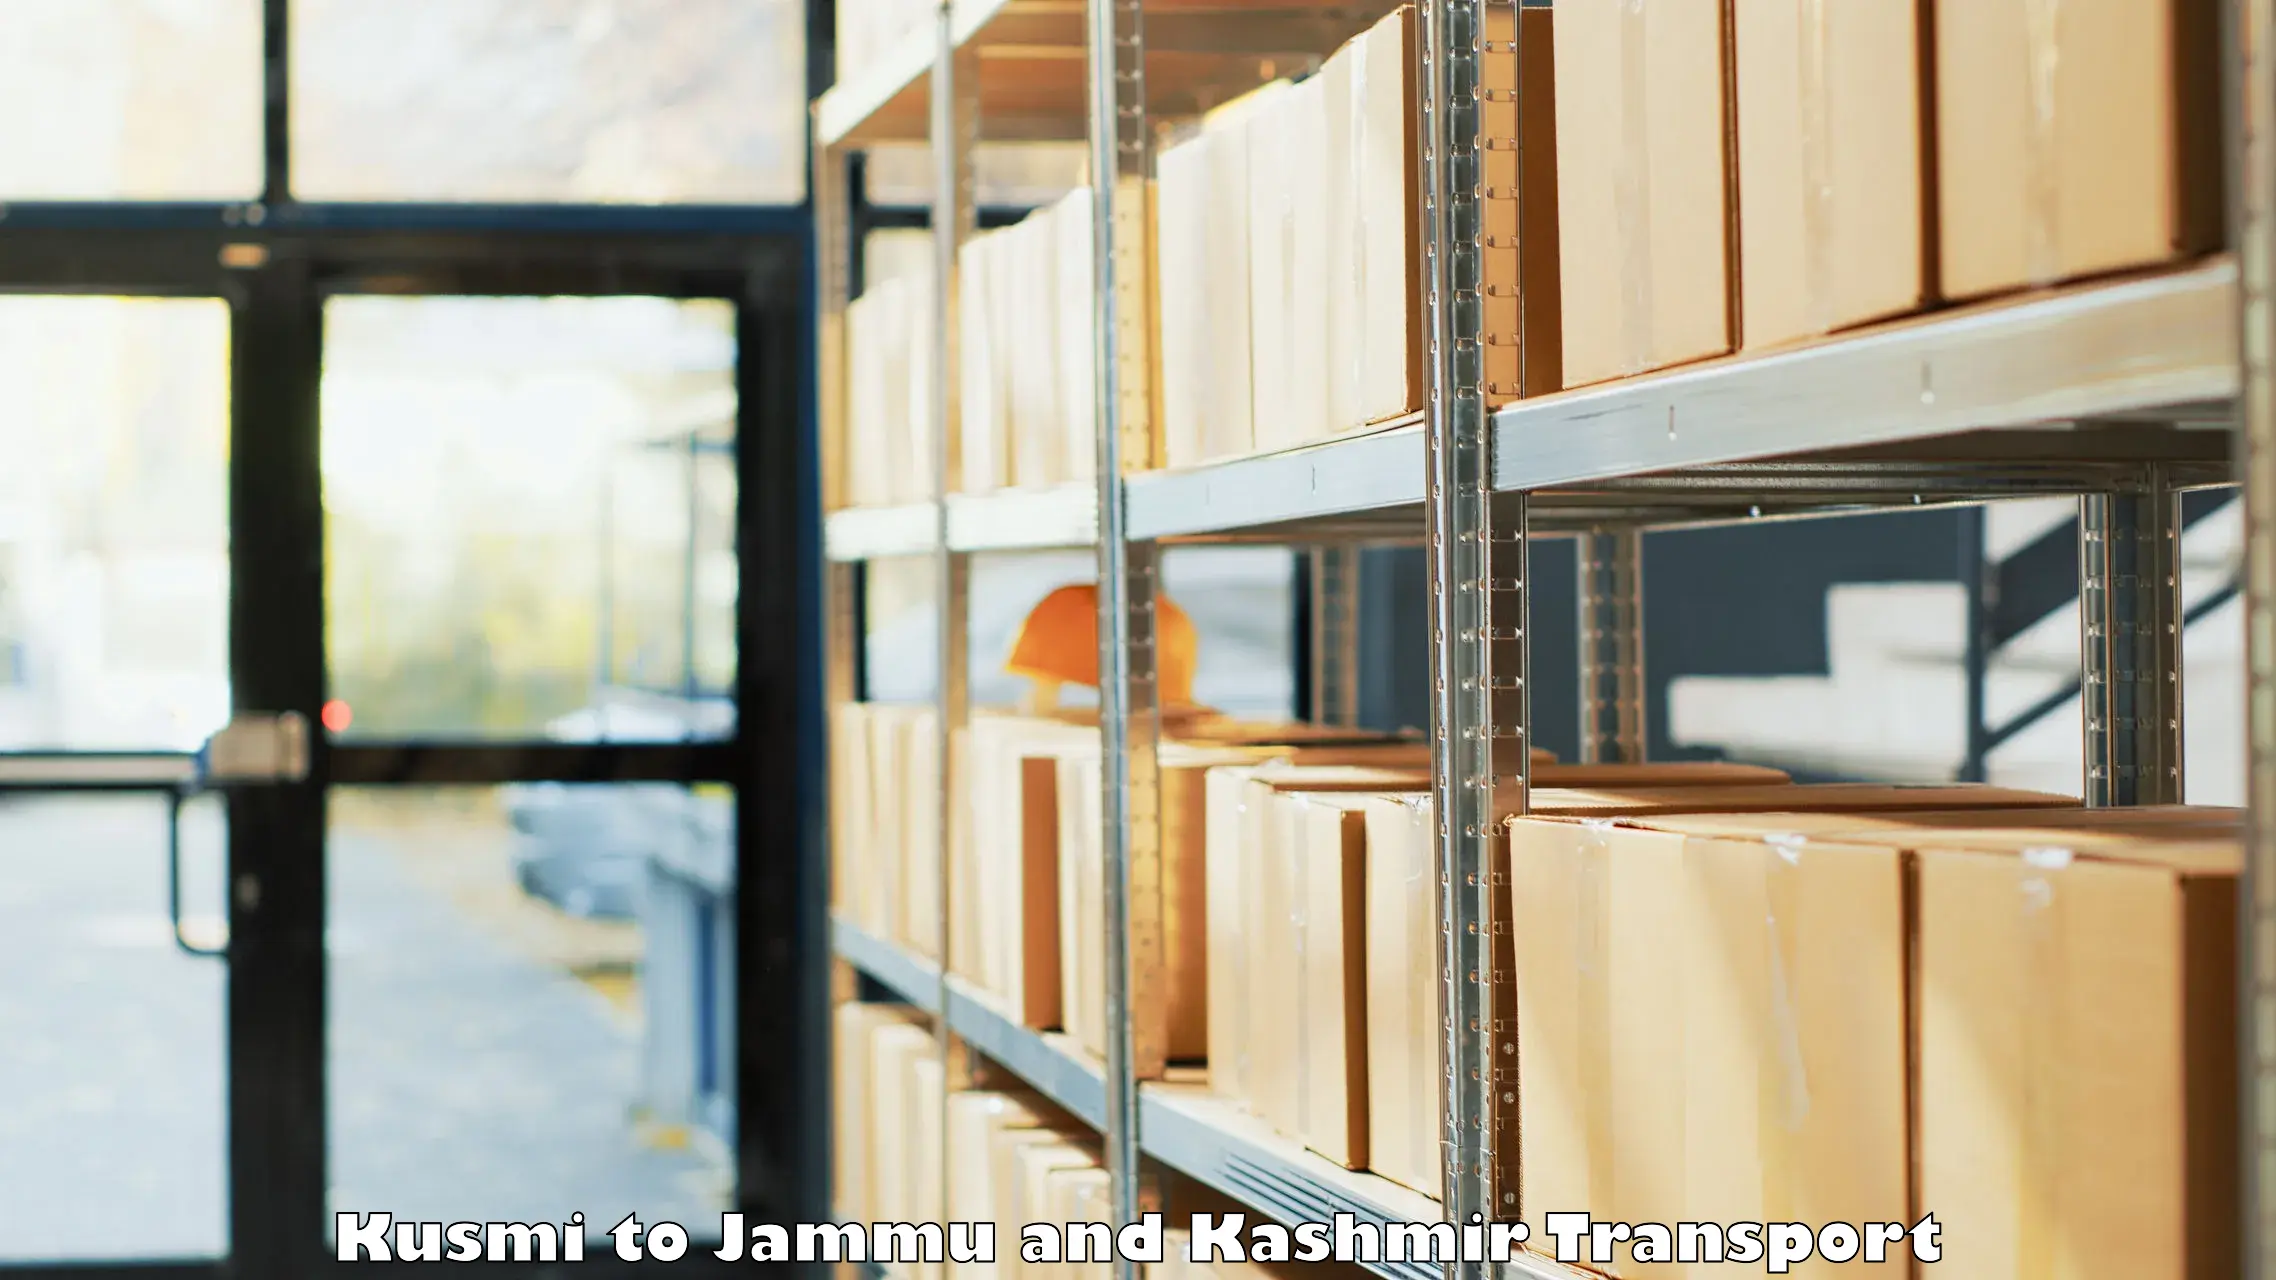 Furniture transport service Kusmi to Jammu and Kashmir